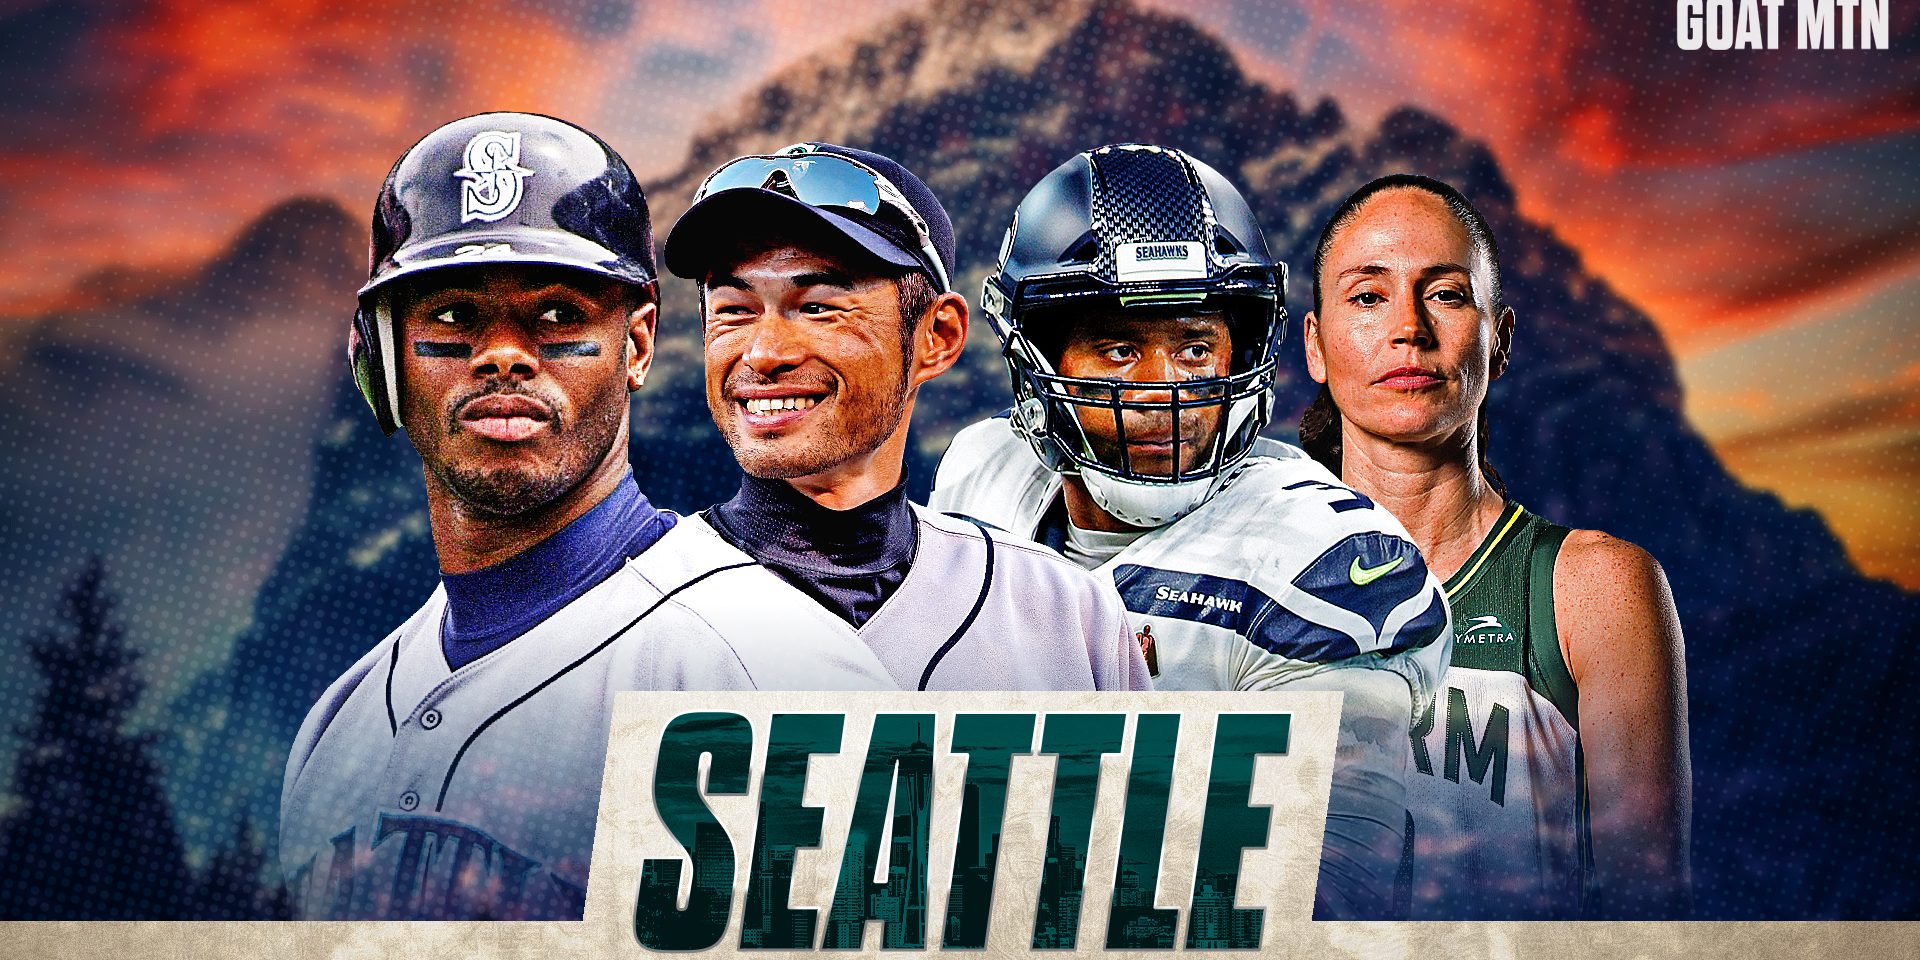 Seattle's GOAT Mountain of Sports: Ken Griffey Jr., Ichiro Suzuki, Sue Bird, Russell Wilson voted best of the best